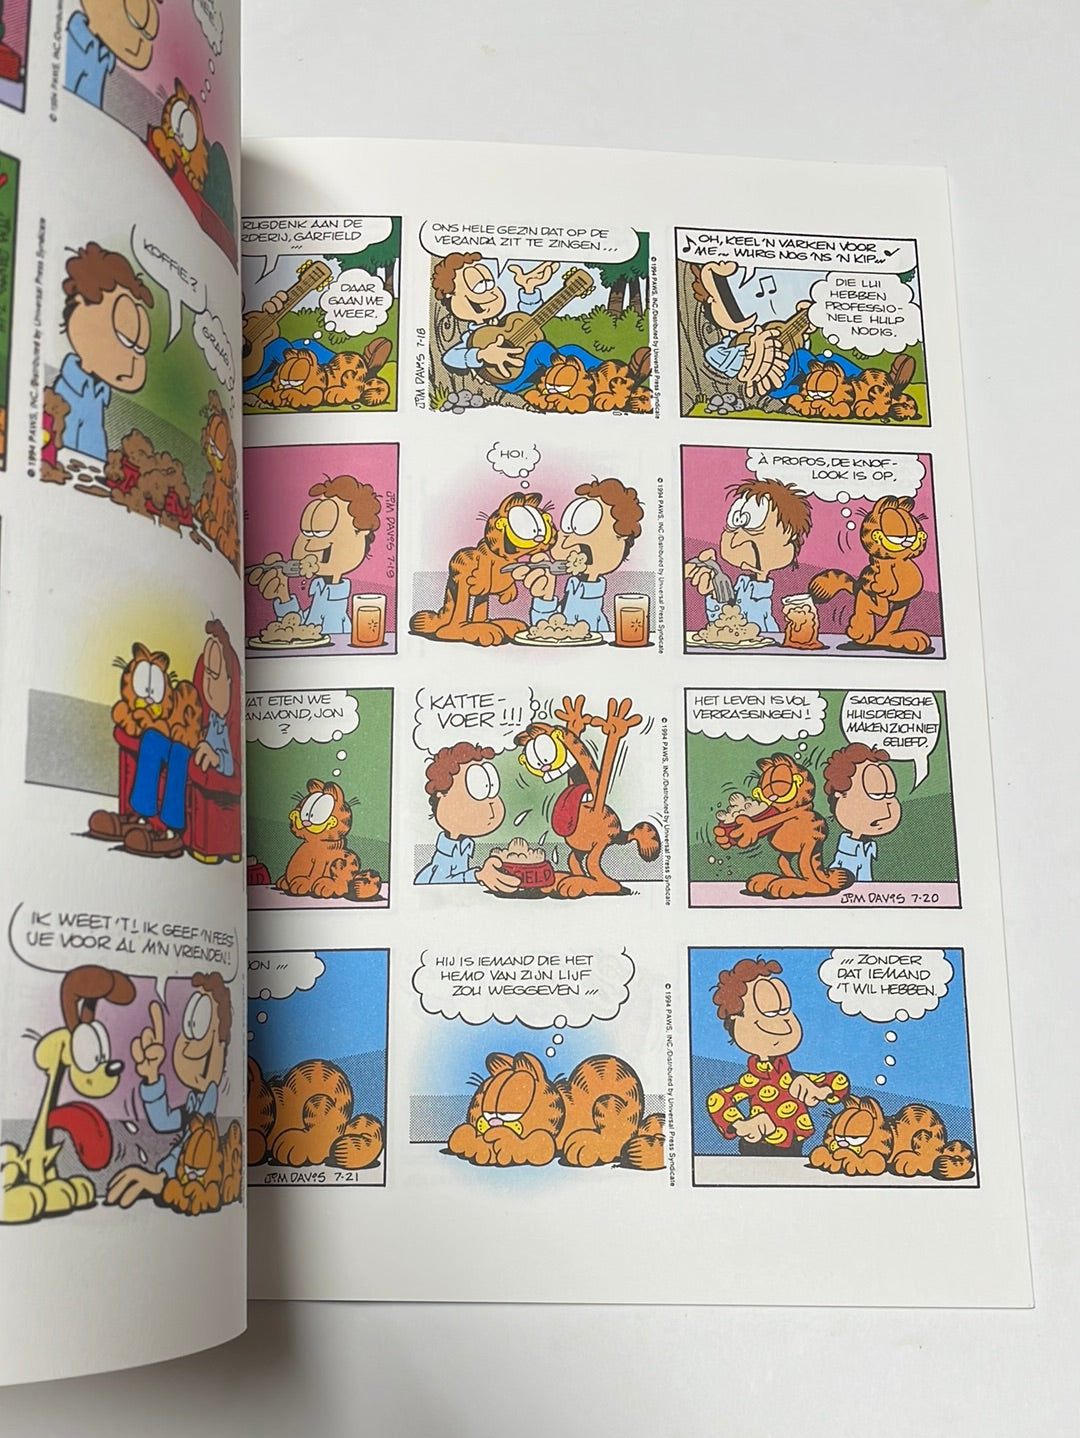 Garfield- Zoekt het hogerop, nummer 41